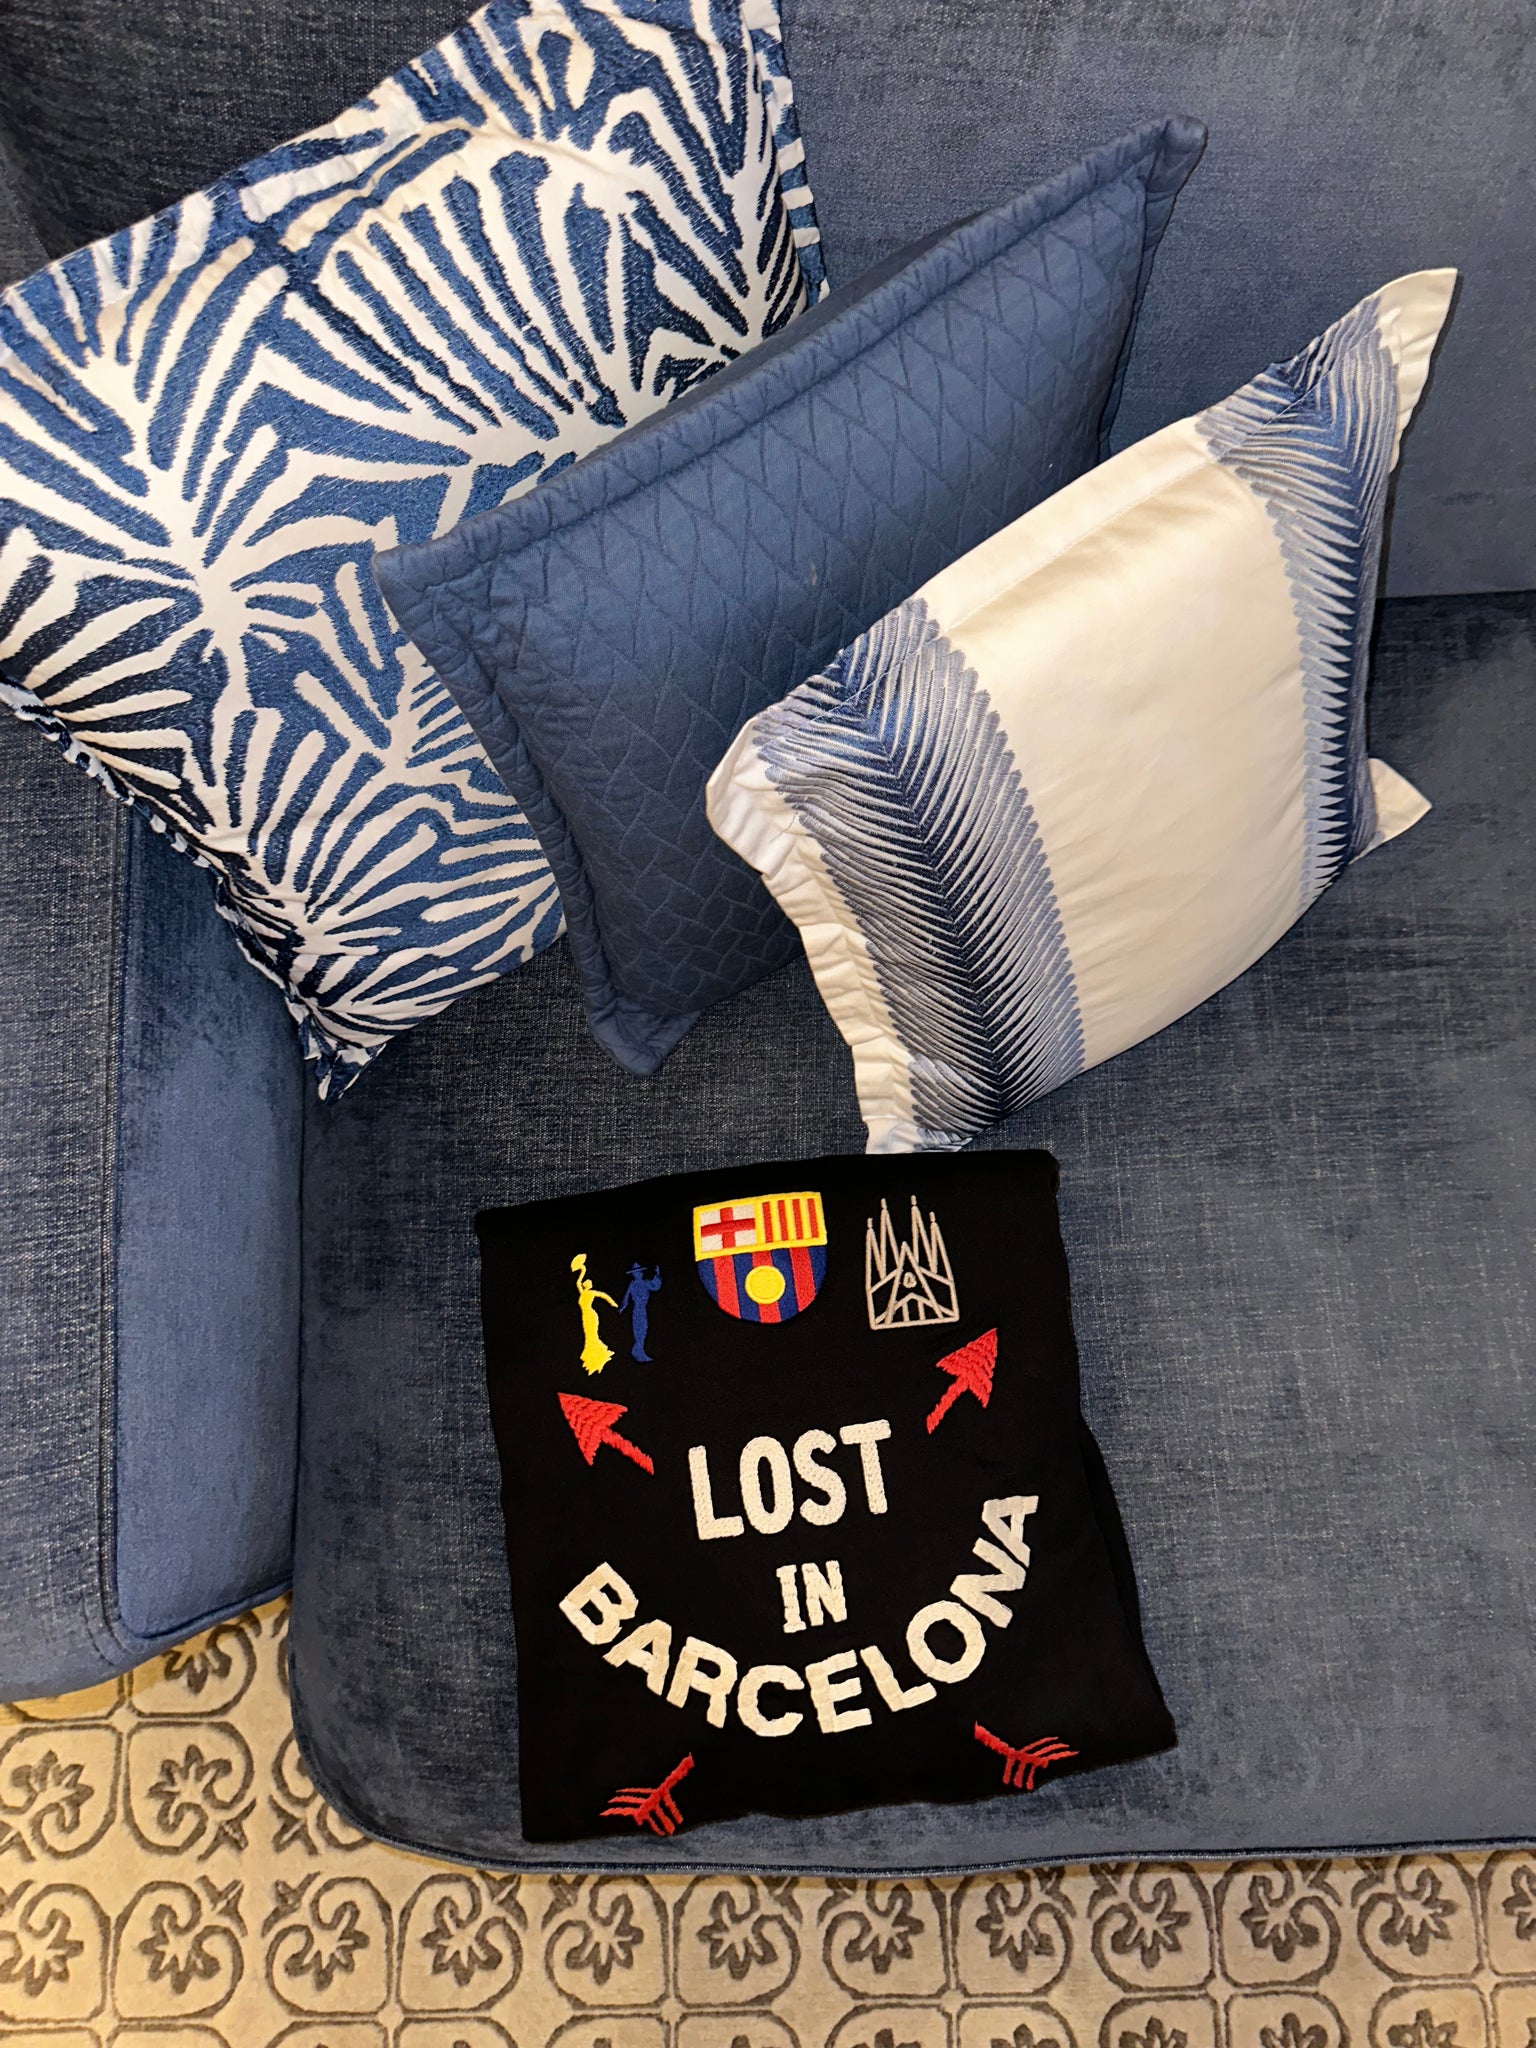 Lost in Barcelona